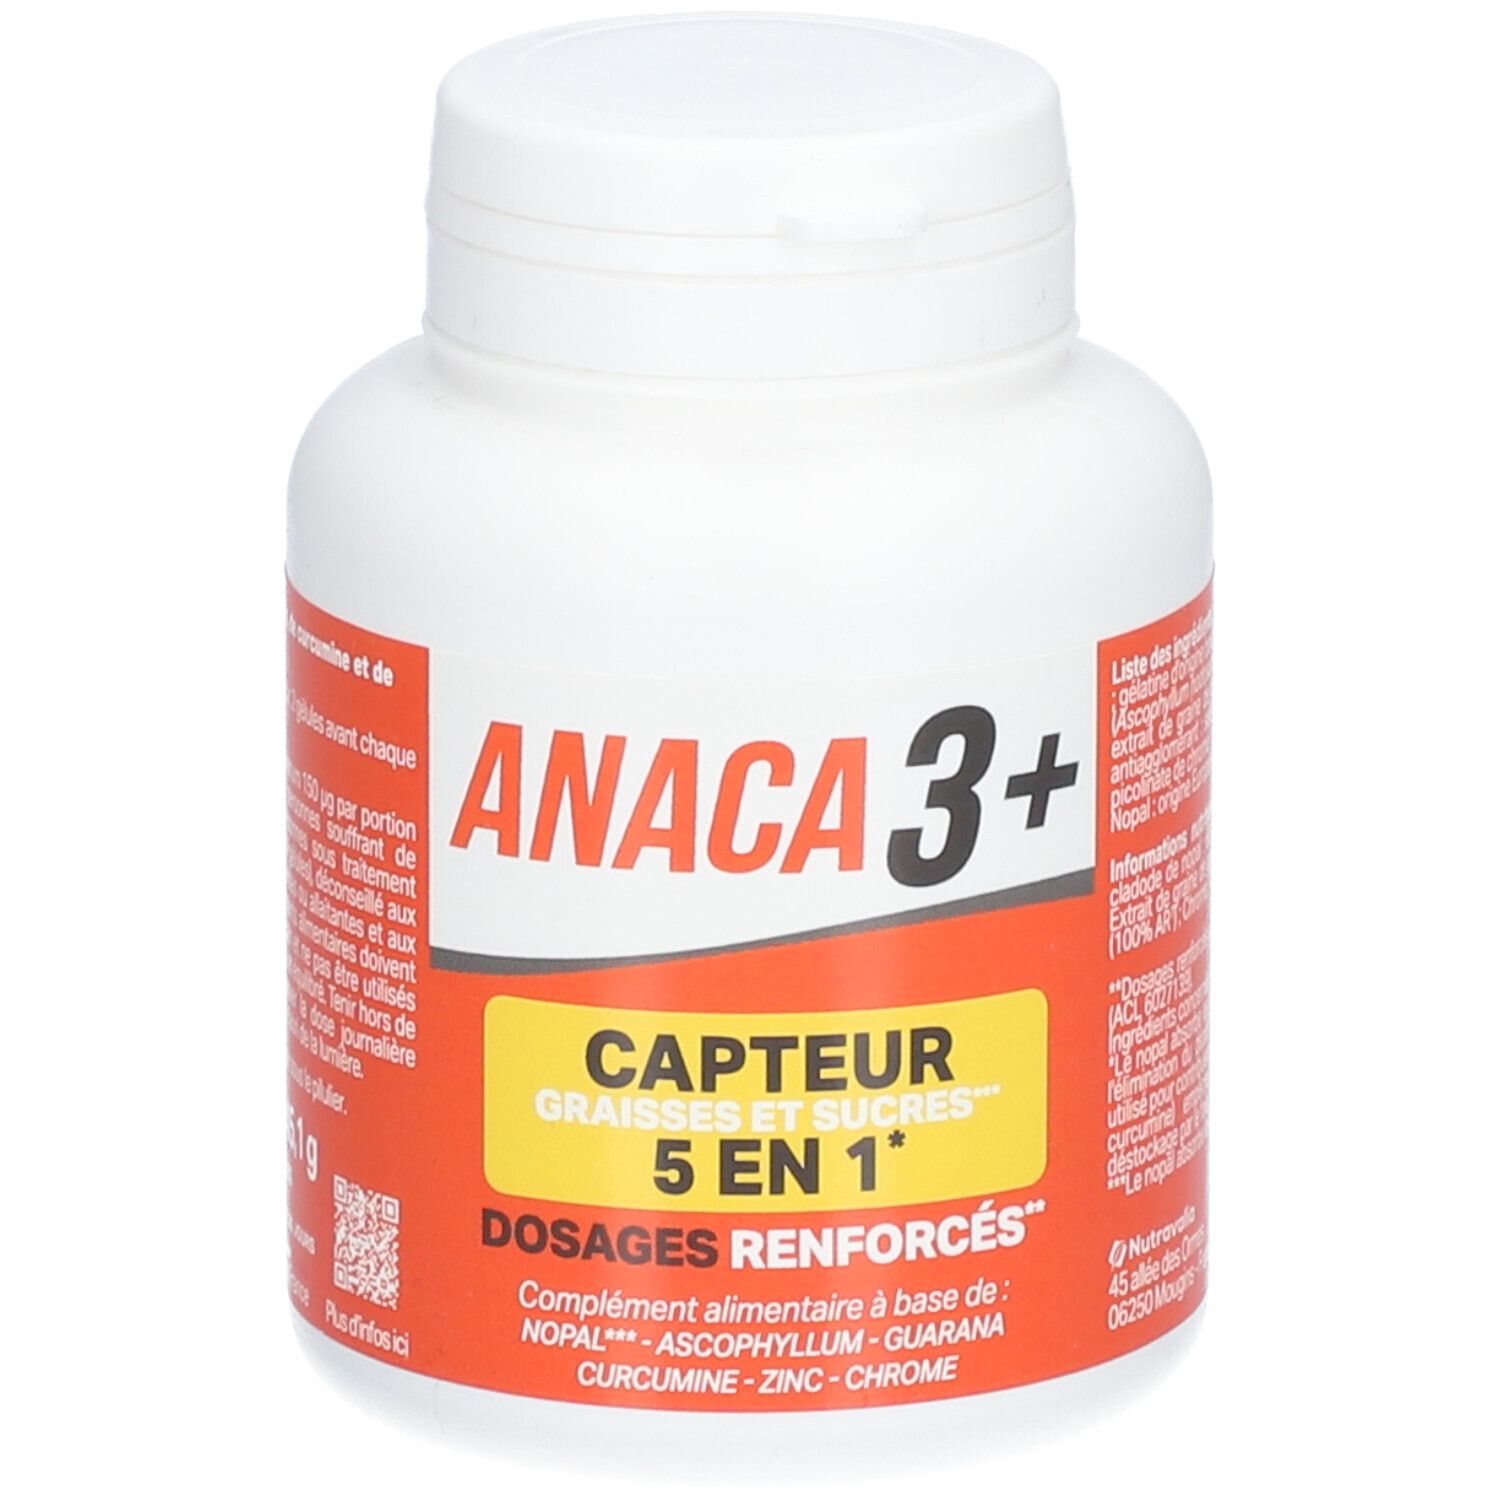 Anaca3+ Capteur Graisses et Sucres 5 en 1